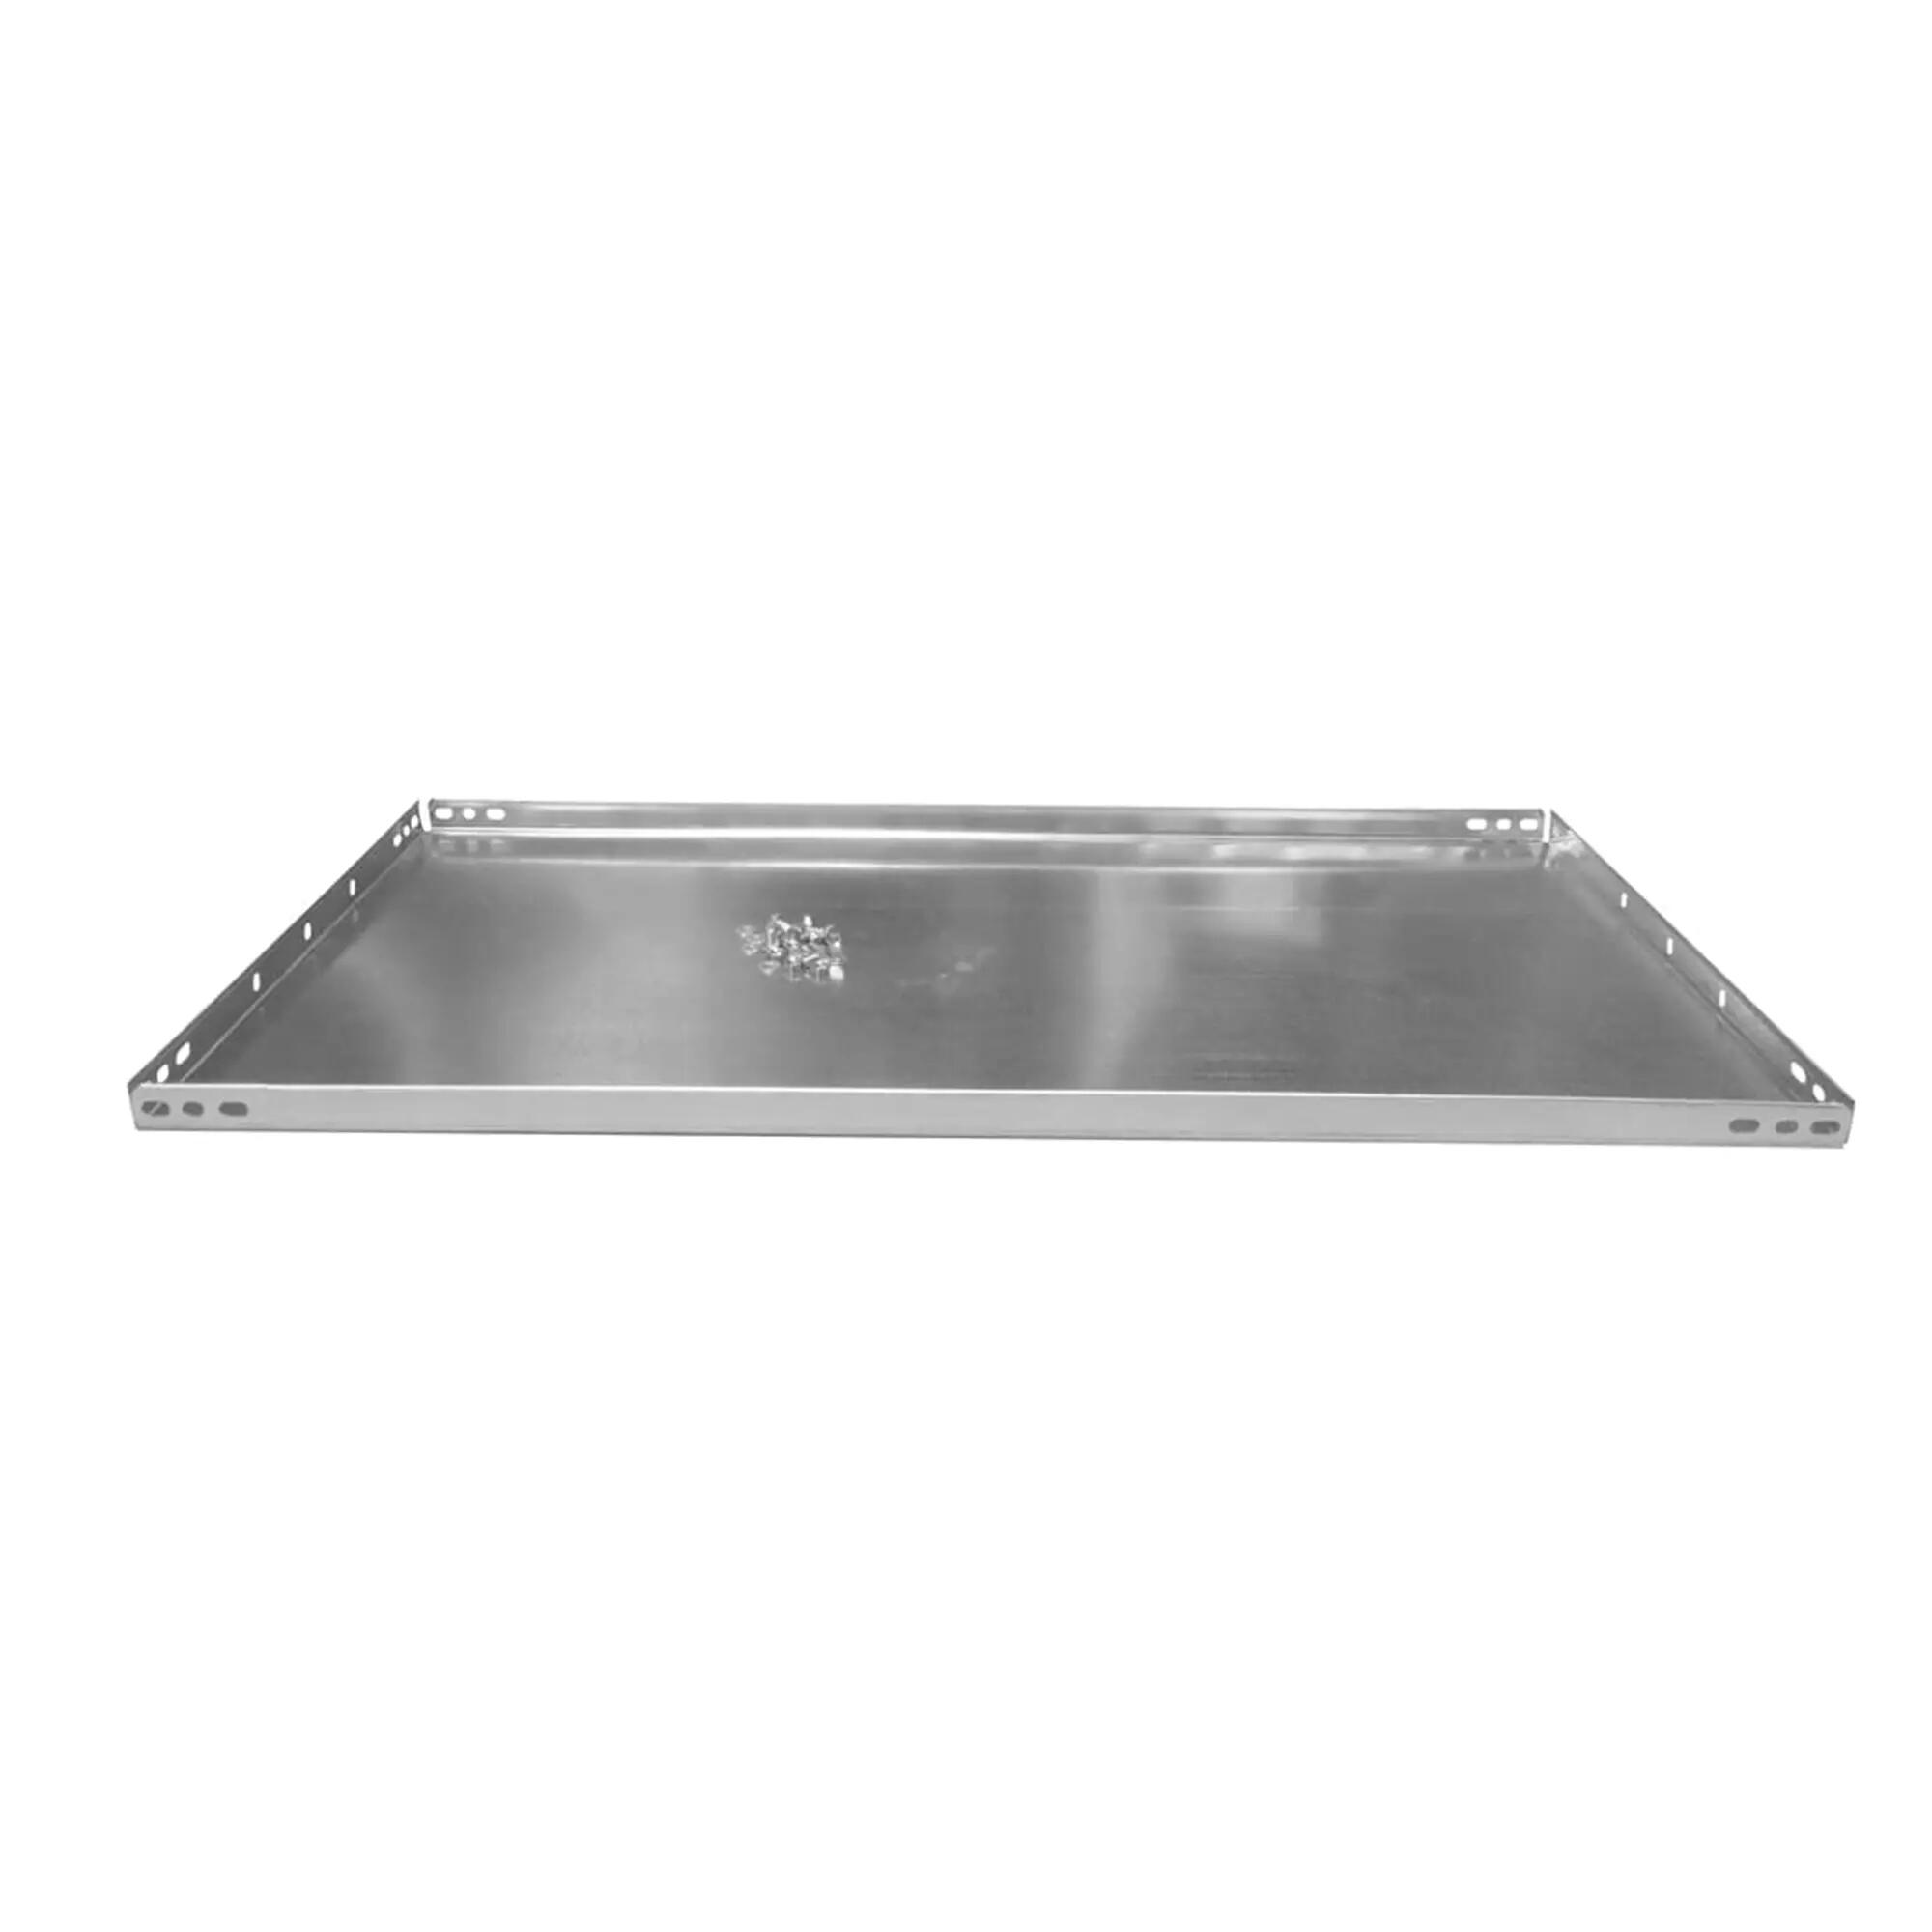 Balda recta para sistema de estantes de acero gris de 60x60cm